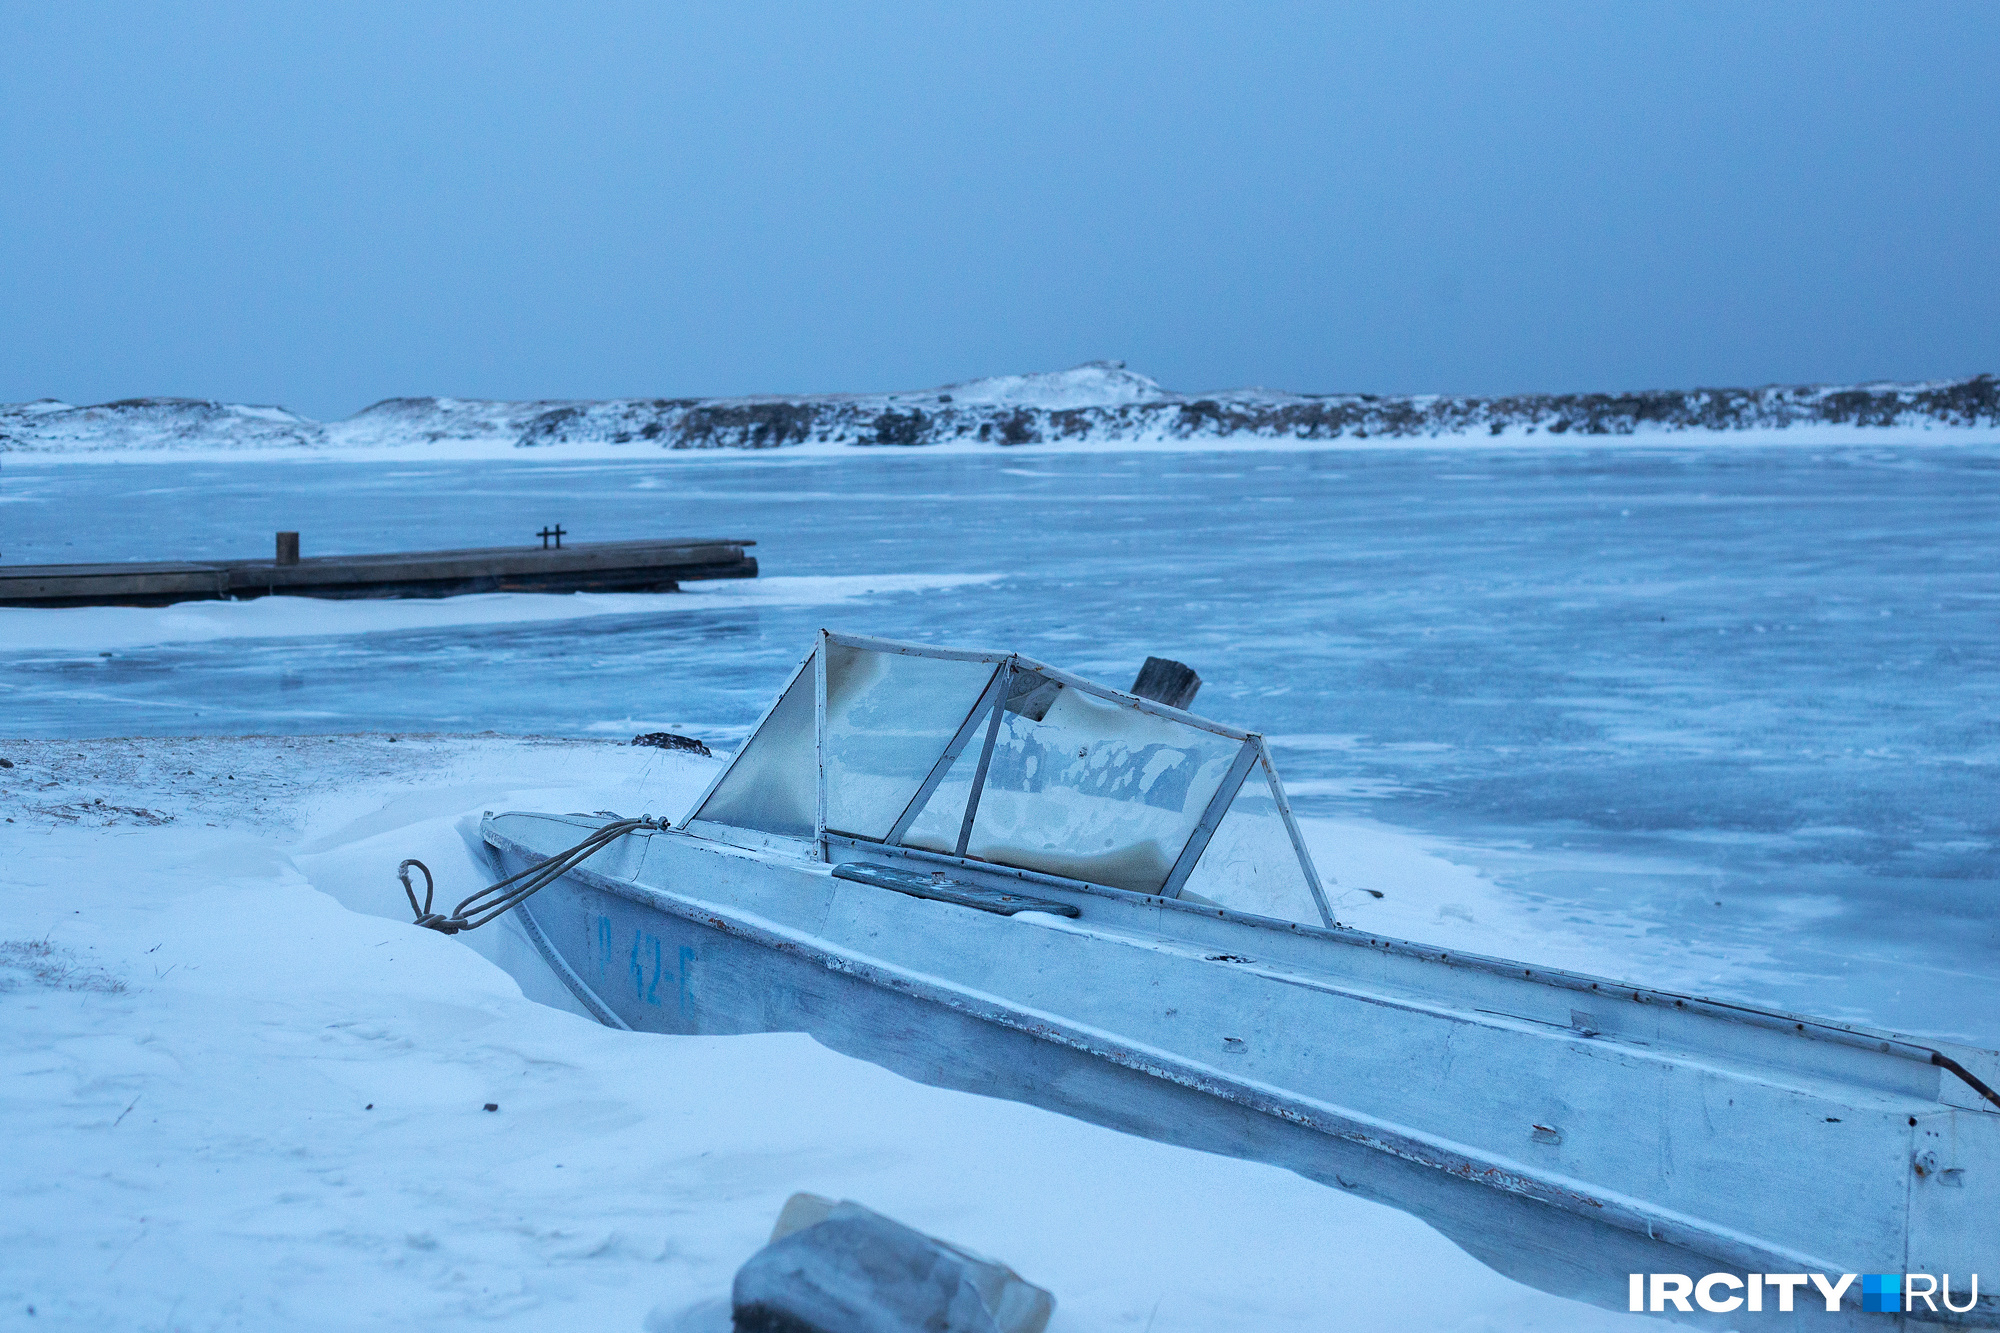 Иркутское управление МЧС рассказало, что встает лед на Байкале